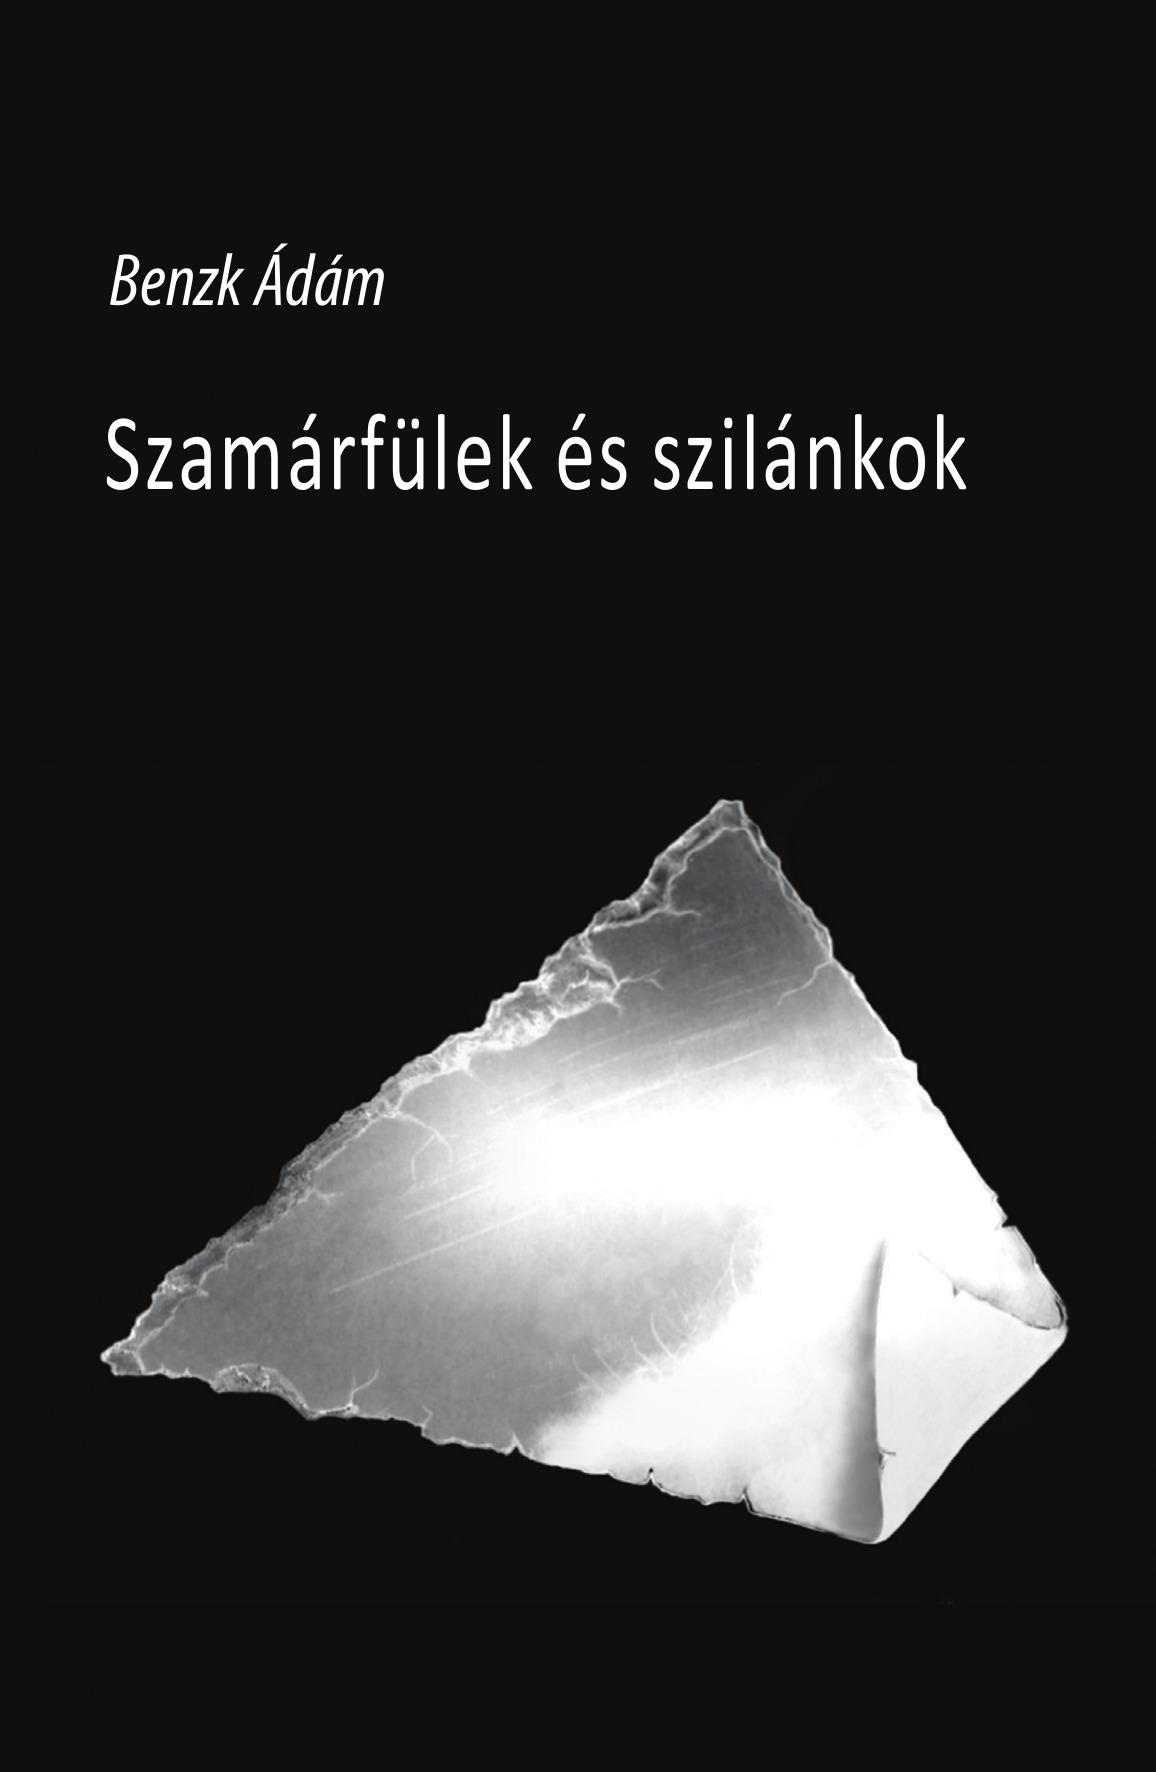 BENZK DM - SZAMRFLEK S SZILNKOK